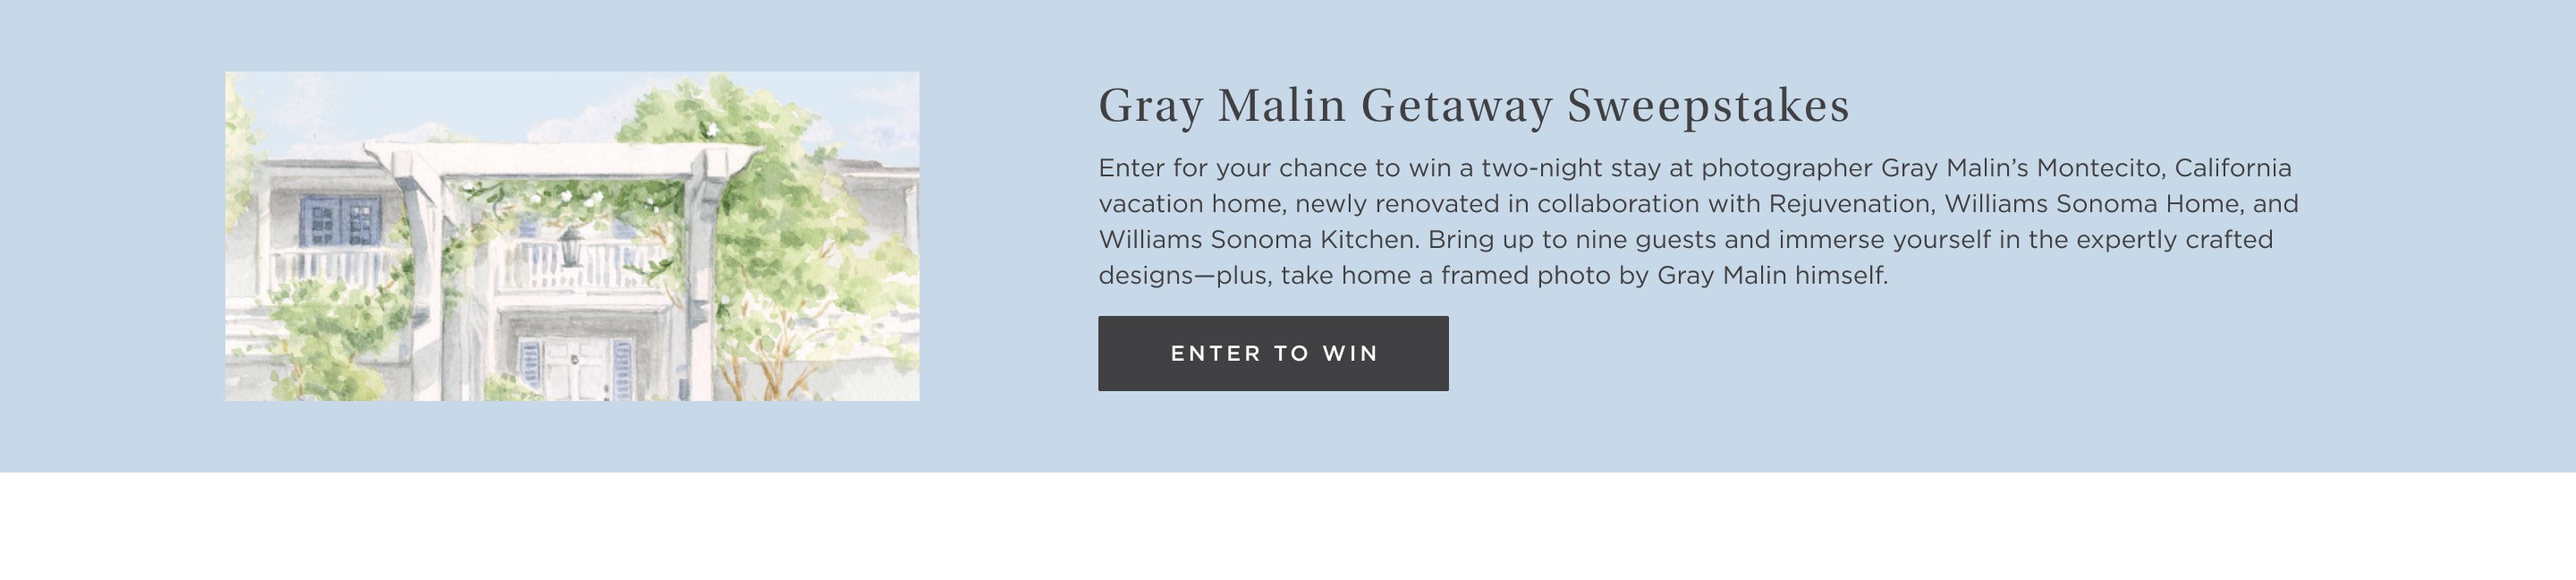 Gray Malin Getaway Sweeps